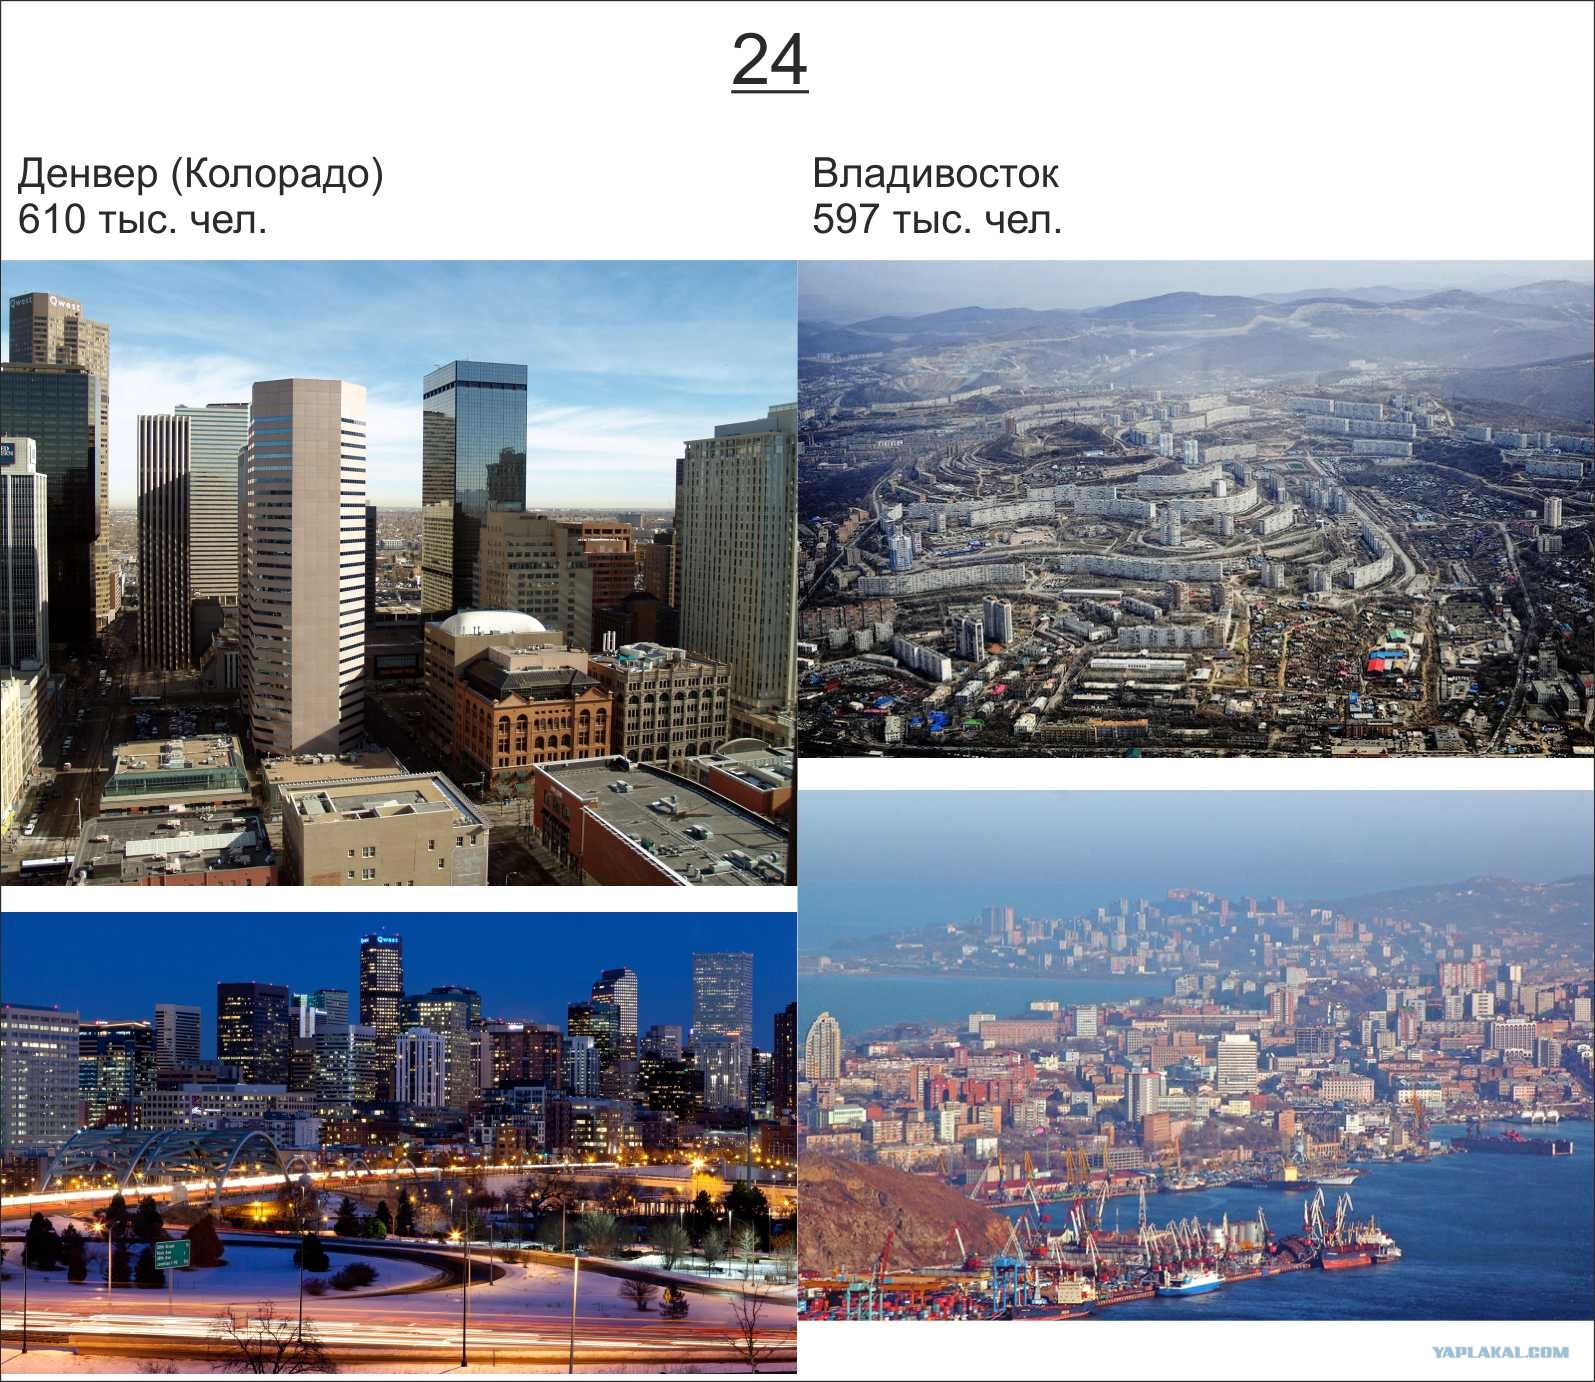 Город Америка в России. Крупные города России фото. 5 Крупнейших городов России и США. Денвер Колорадо метрополитен. Какие вы знаете крупные города